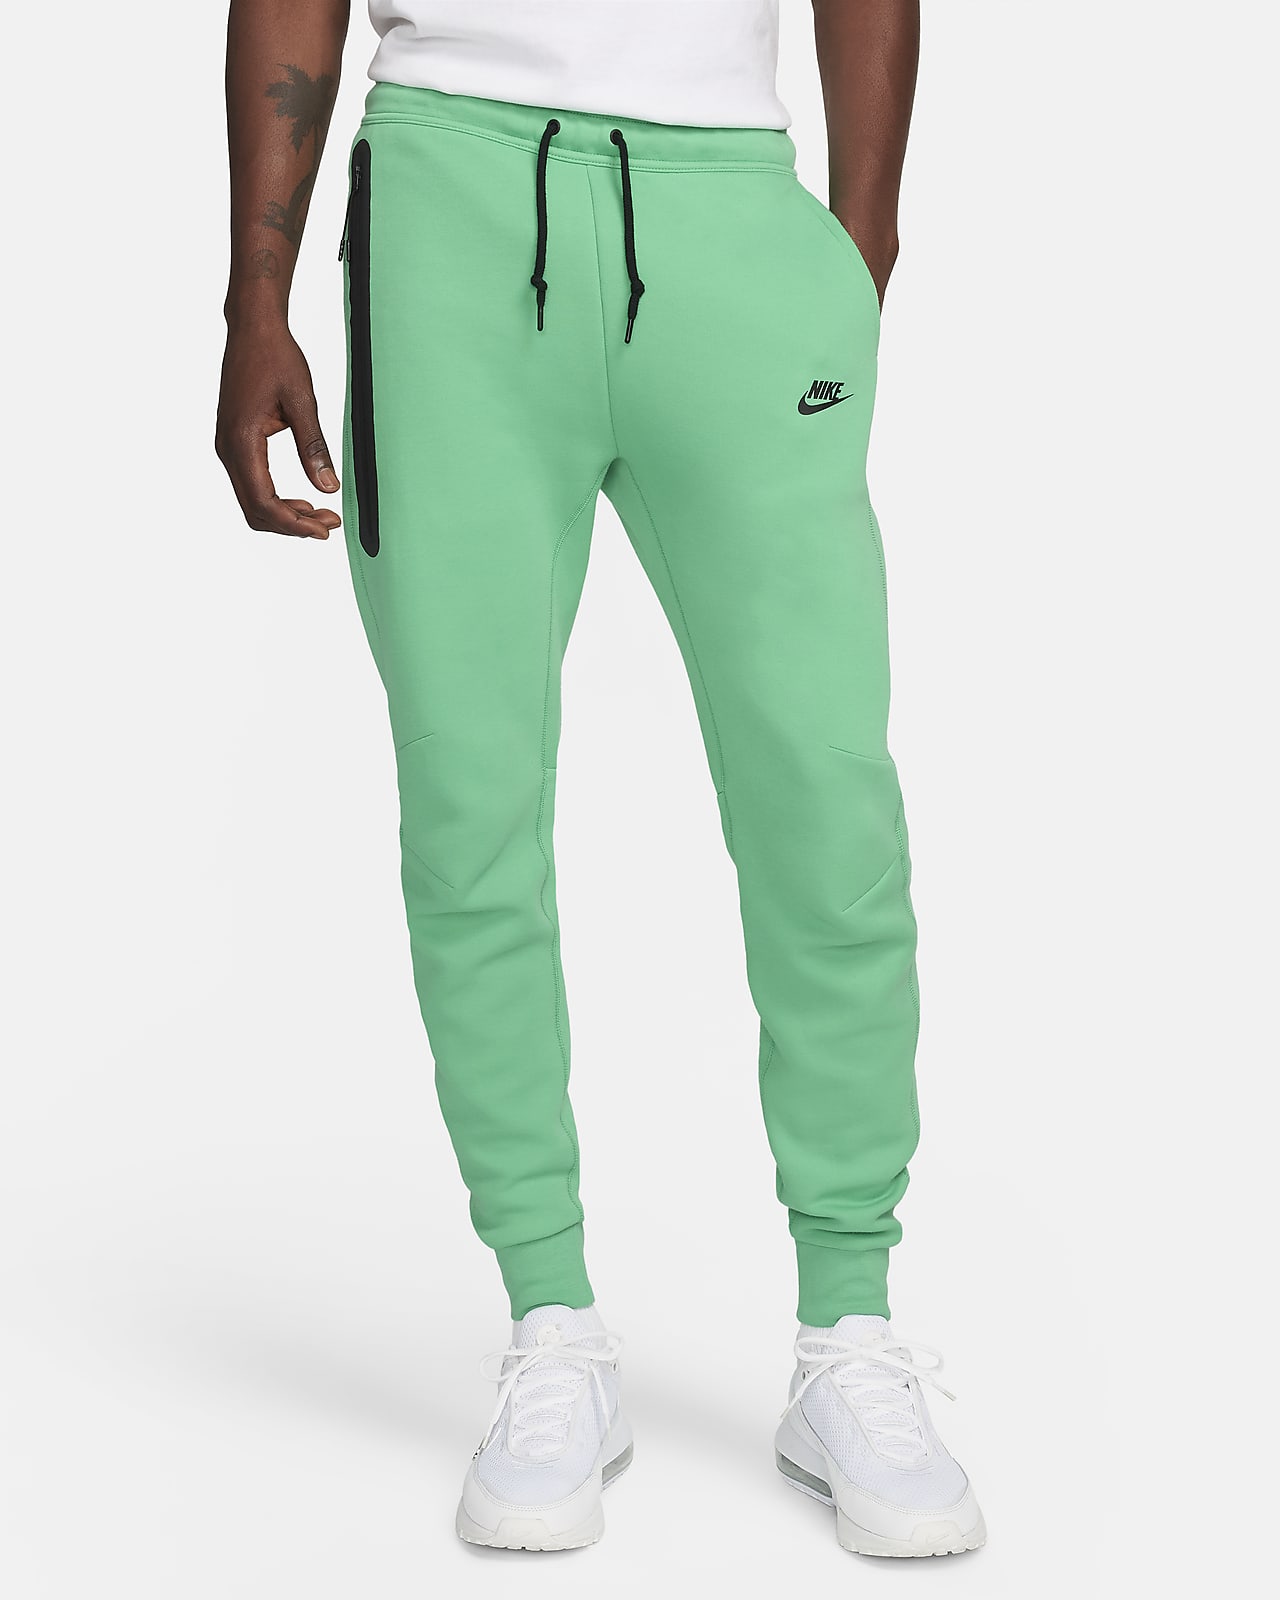 Calça Nike Tech Fleece - Masculina em Promoção